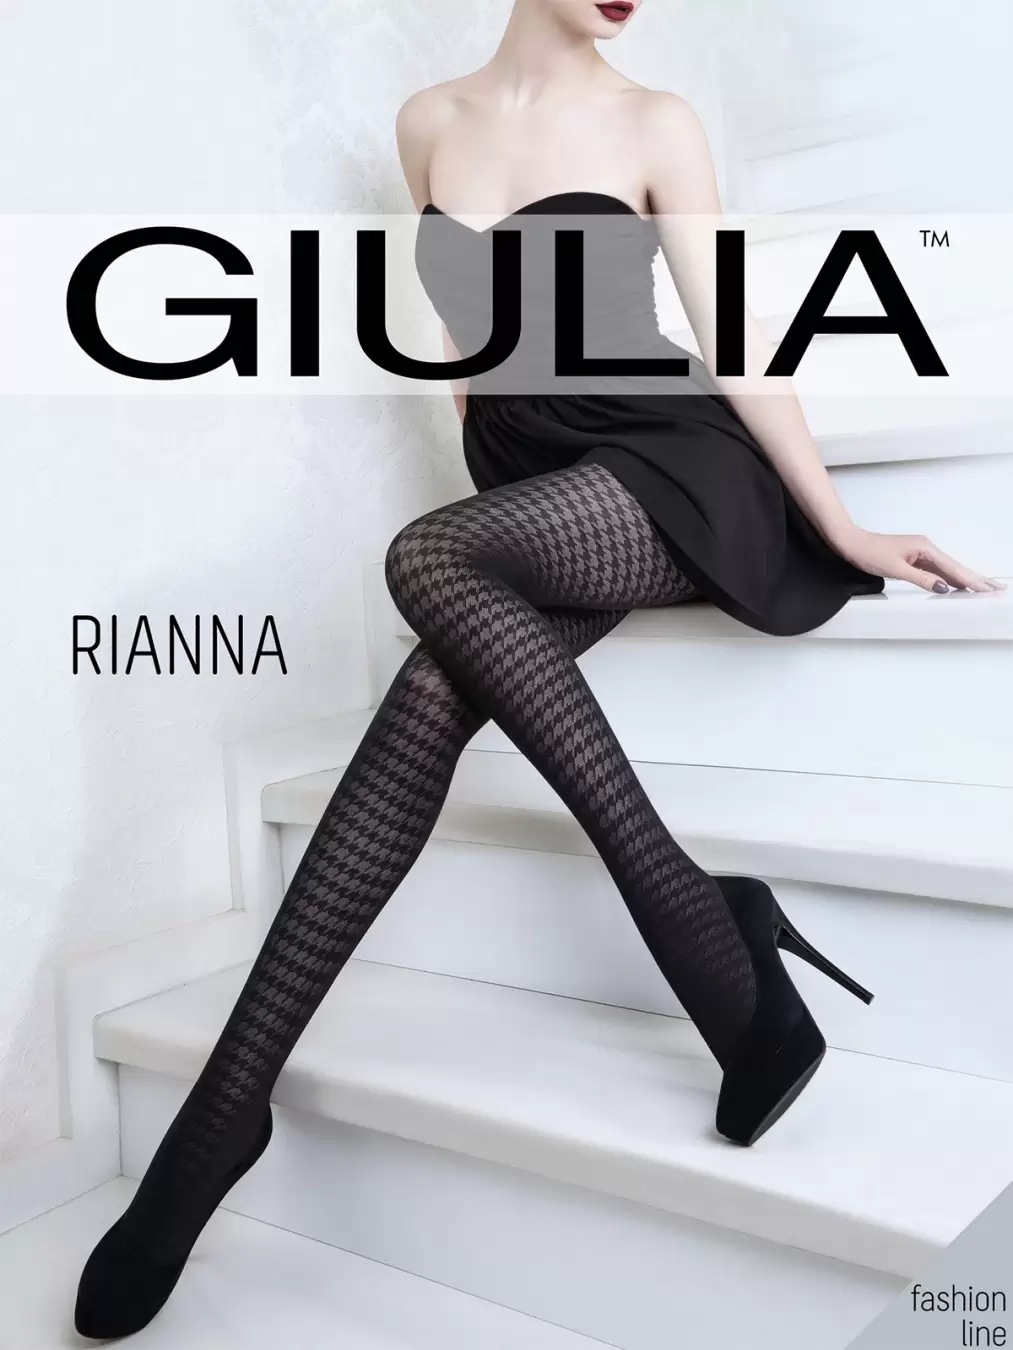 Giulia RIANNA 05, фантазийные колготки (изображение 1)